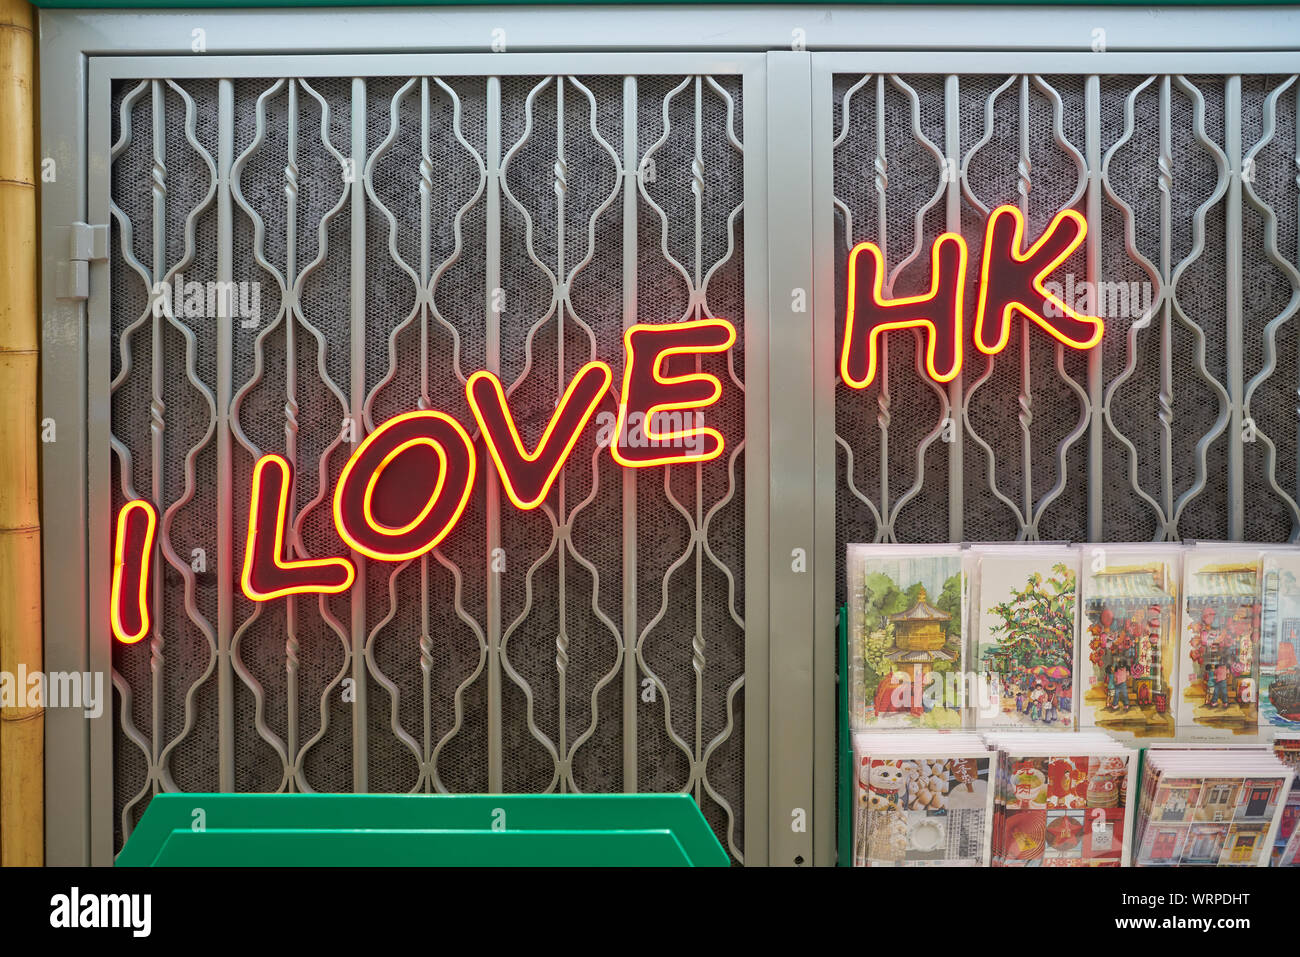 HONG KONG, CHINA - CIRCA APRIL, 2019: I LOVE HK sign and postcards on display at a store in Hong Kong International Airport. Stock Photo